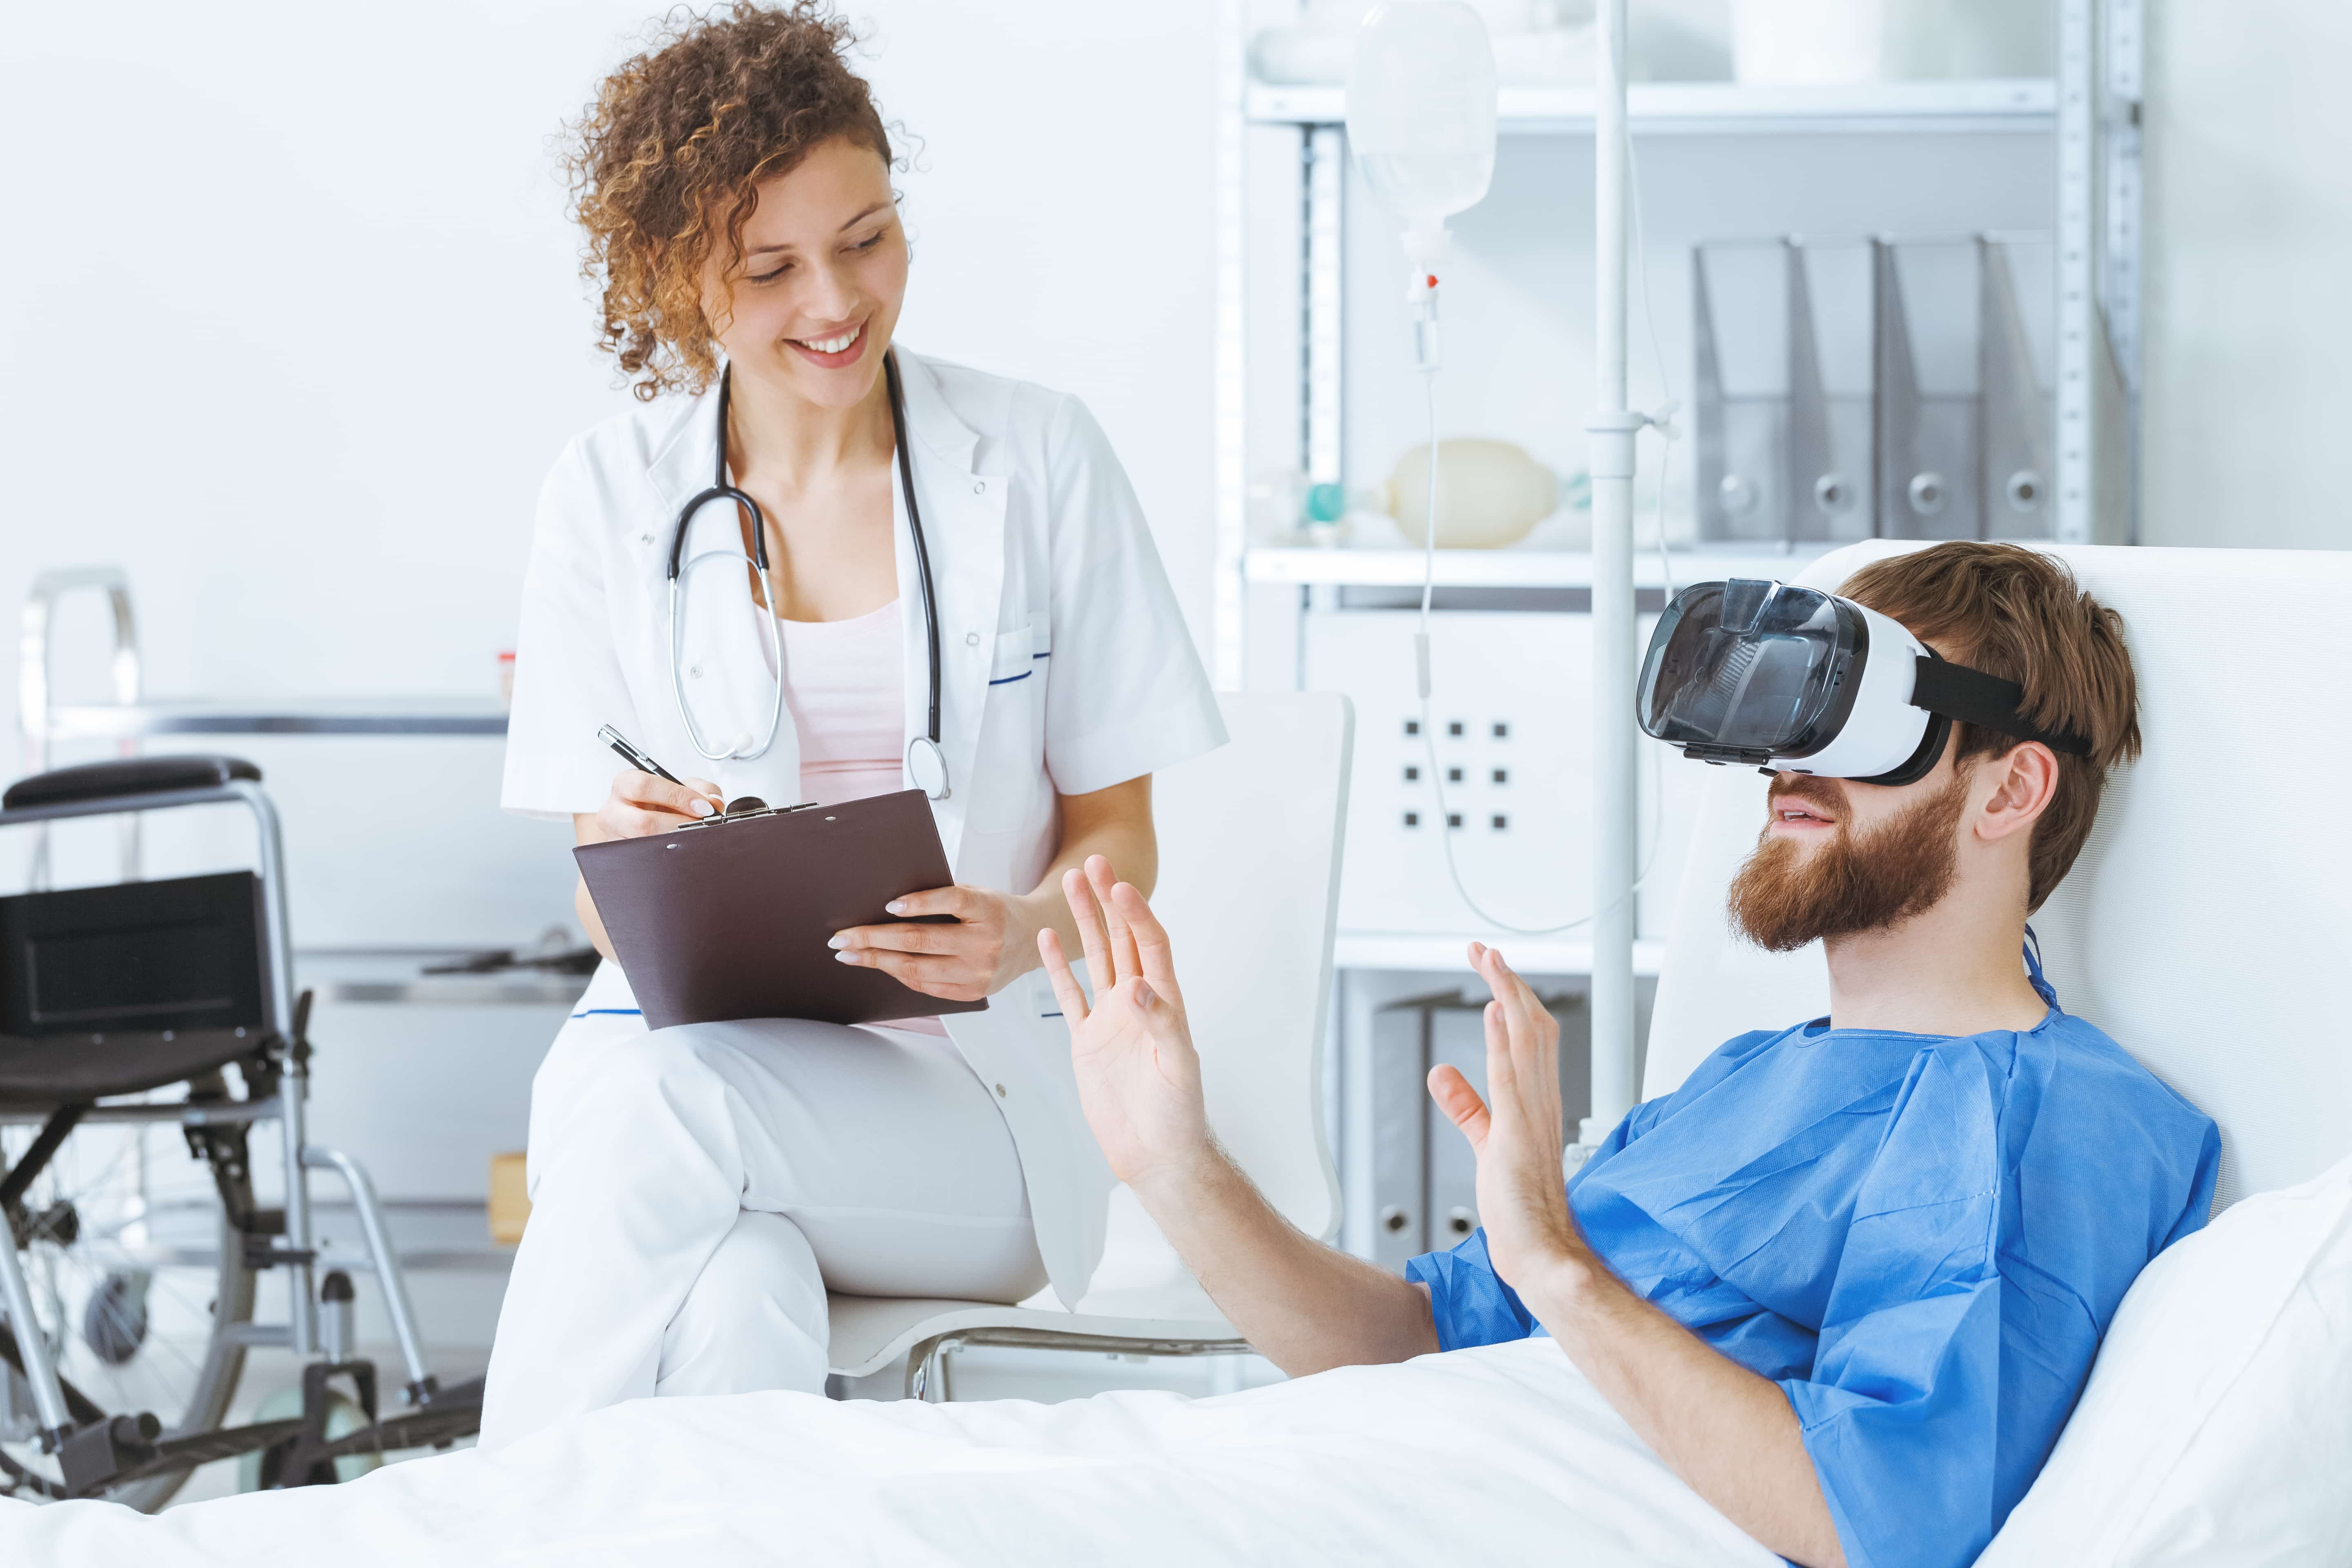 Психологические медицинские учреждения. Виртуальная реальность в медицине. VR В медицине. VR технологии в медицине. Виртуальная реальность (VR) В медицине.